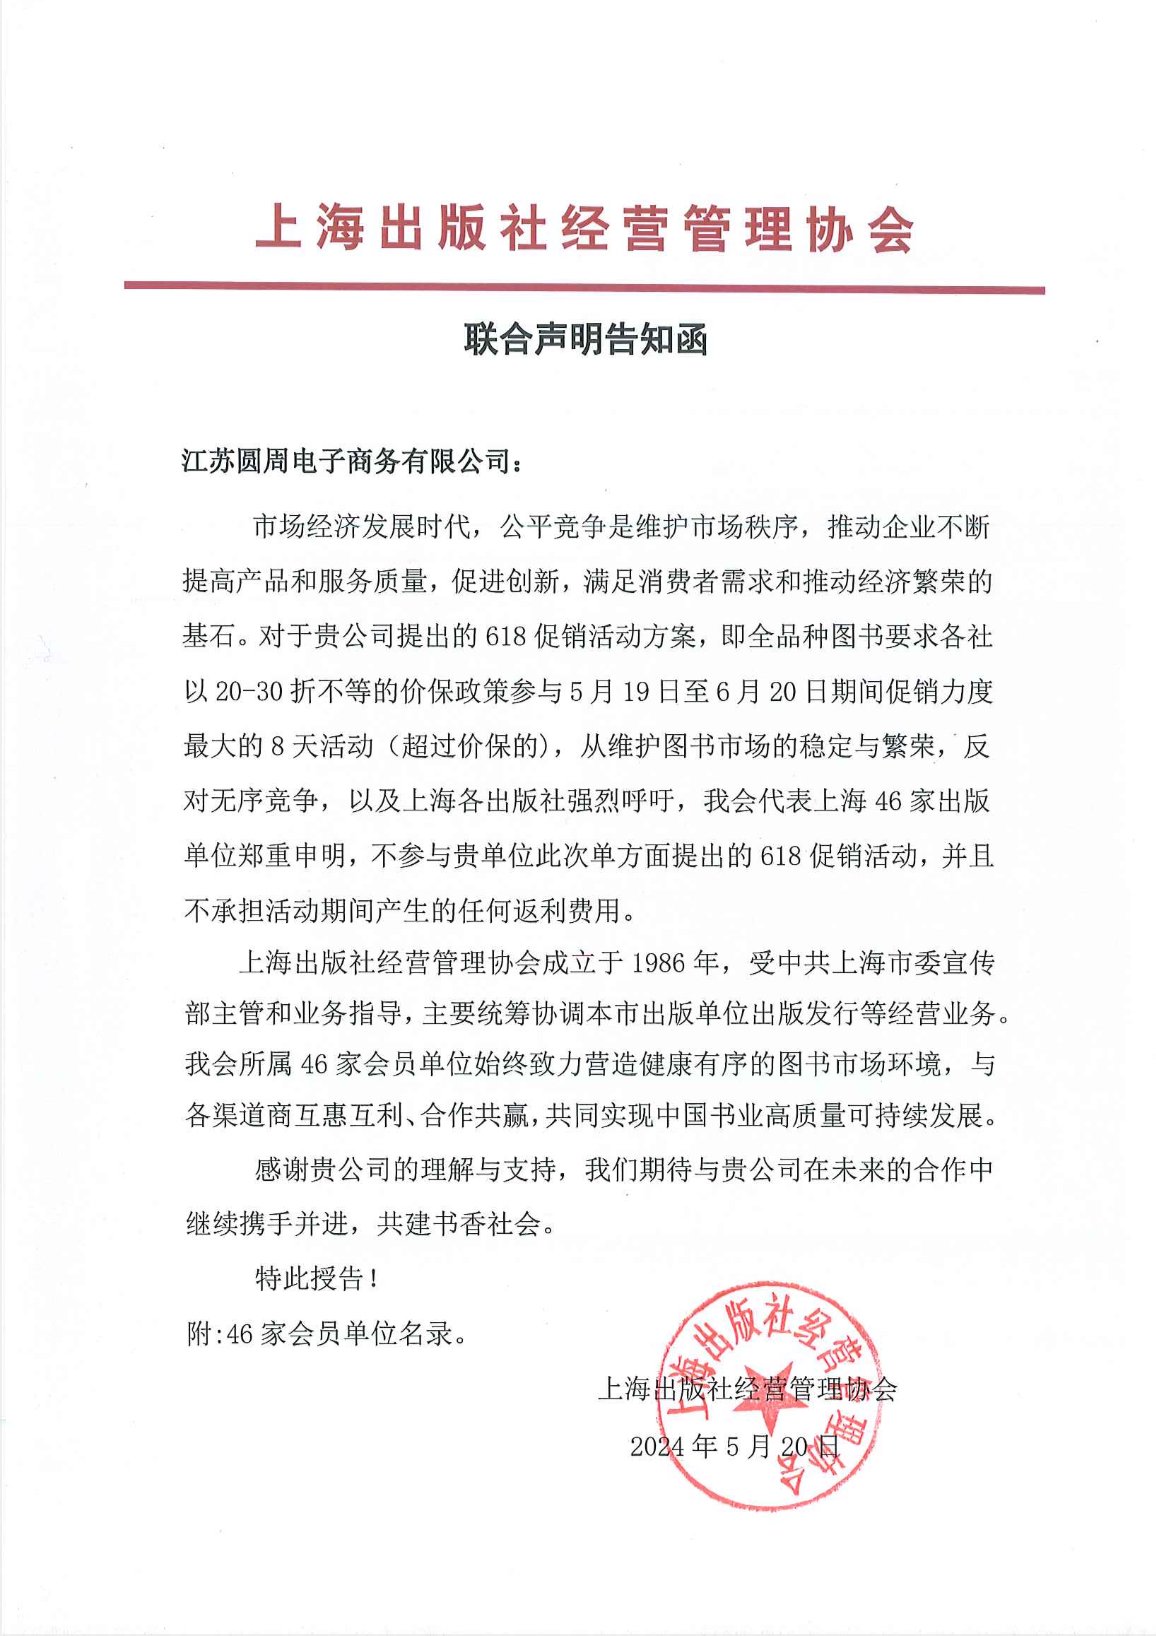 上海出版社經營管理協會發表《聯合聲明告知函》